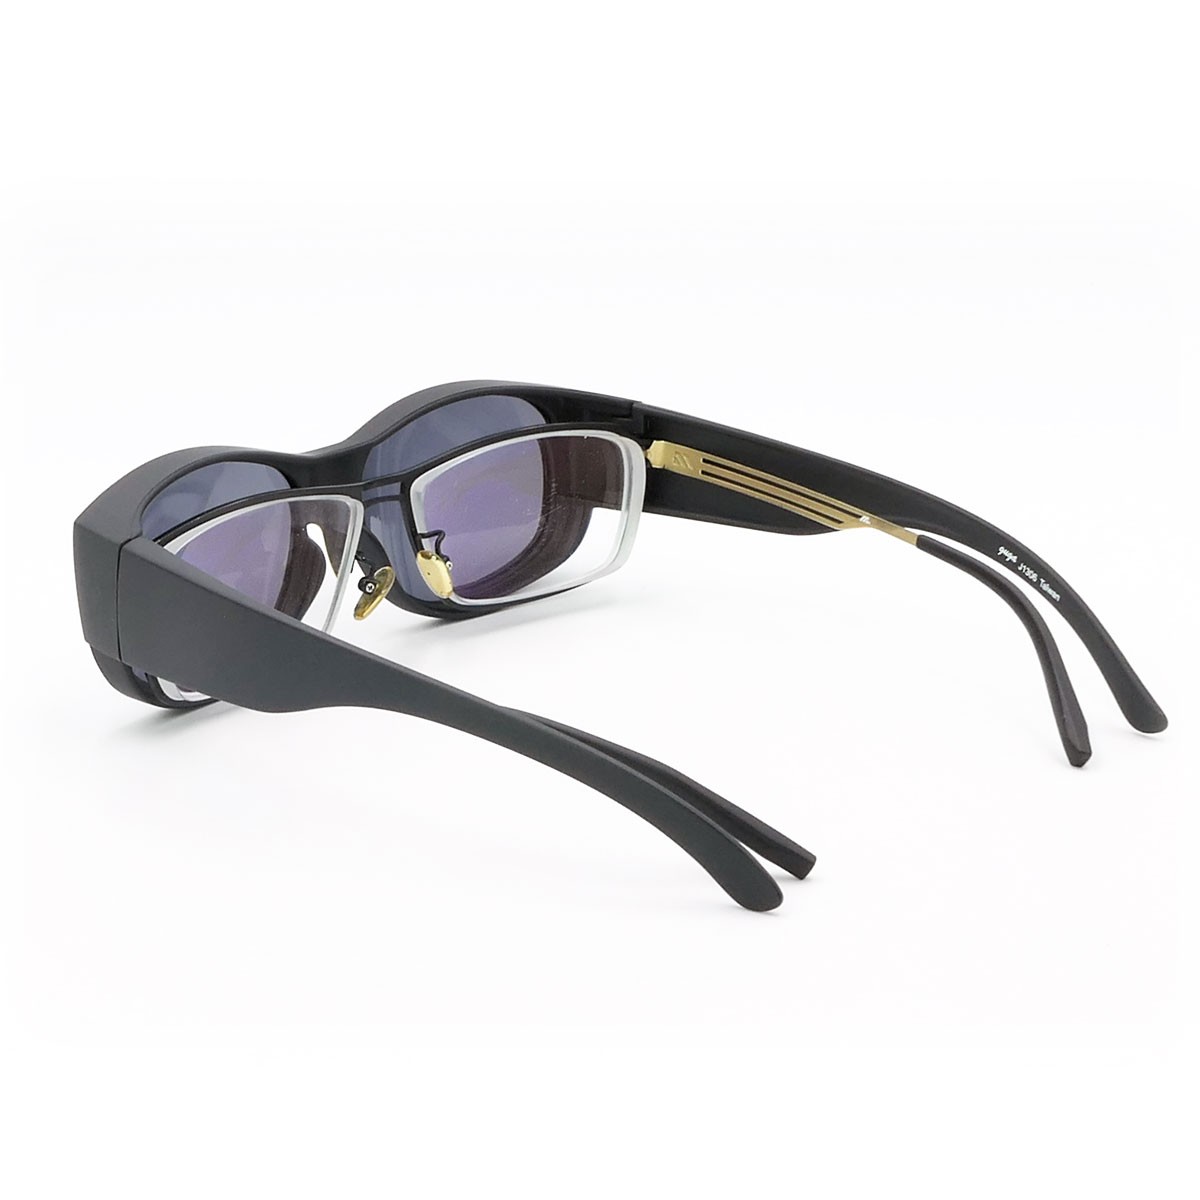 客製化墨鏡,套鏡式太陽眼鏡,可搭配近視眼鏡